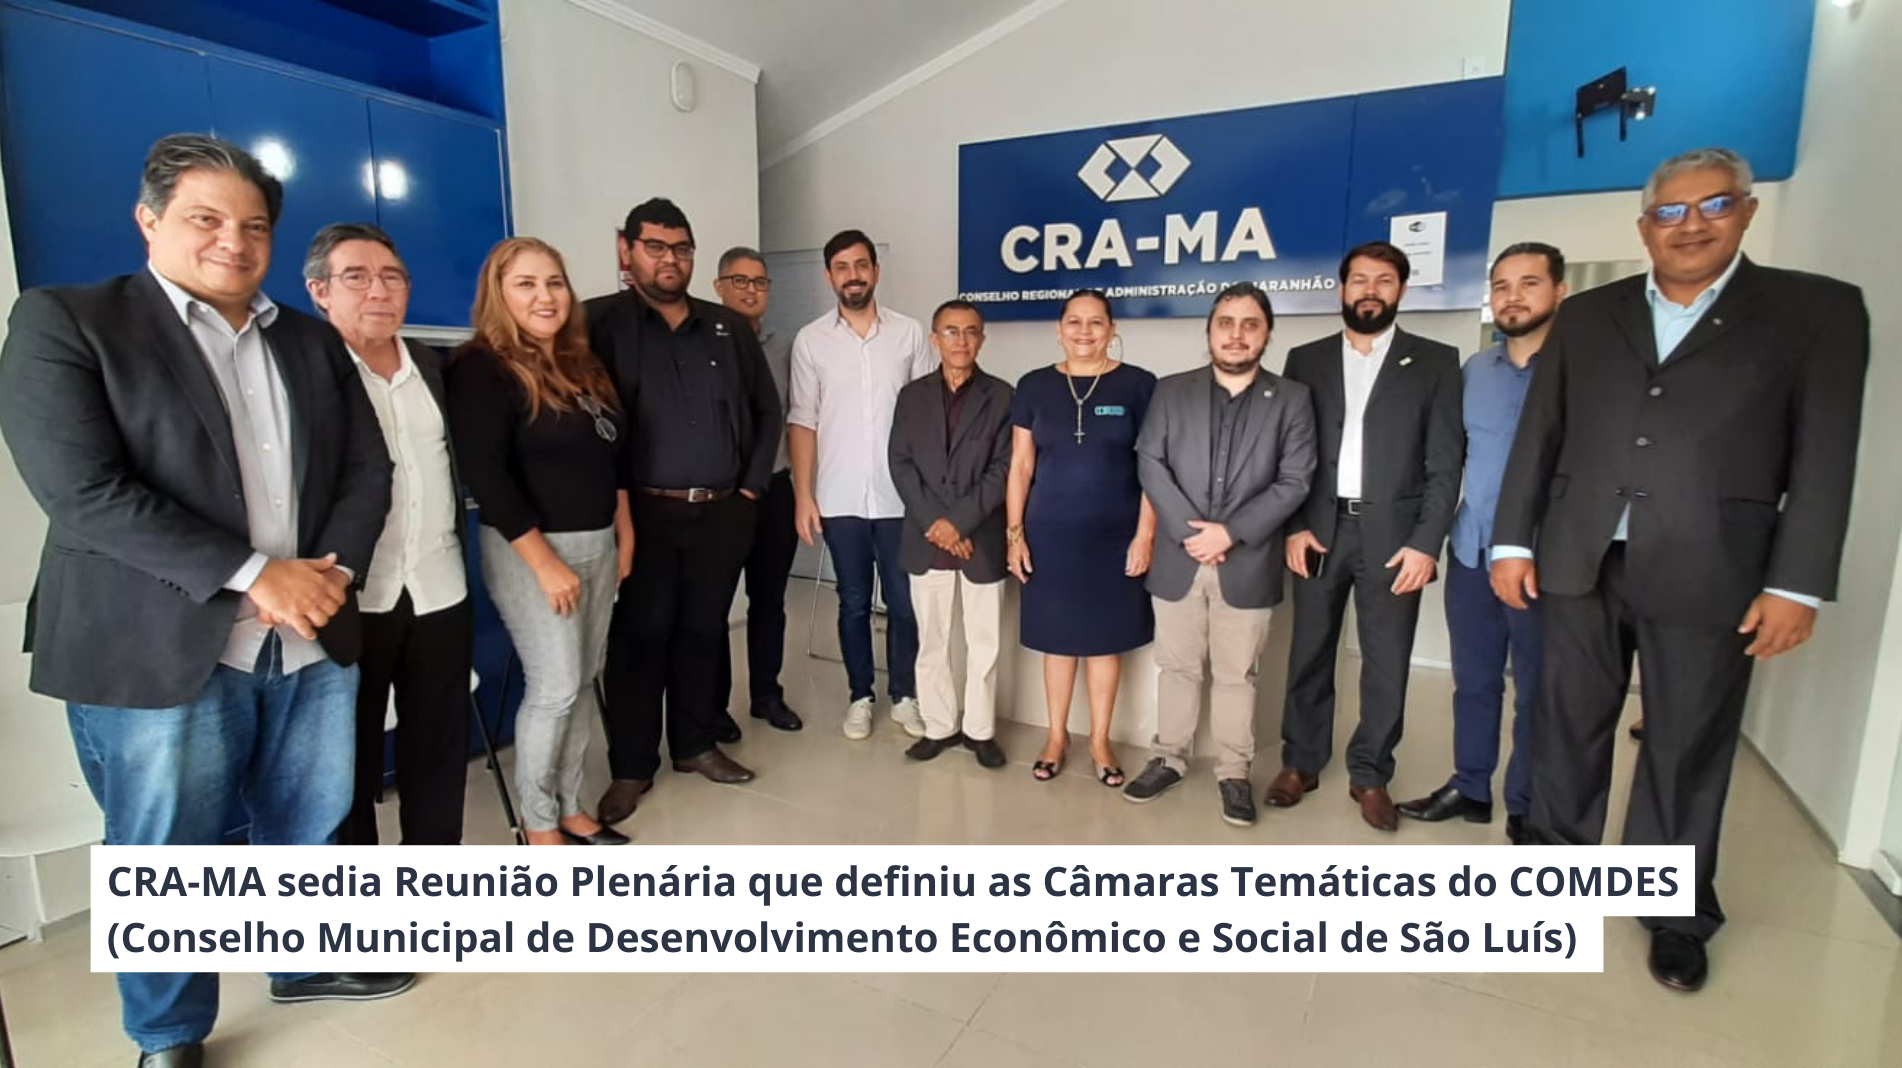 Read more about the article CRA-MA sedia Reunião Plenária que definiu as Câmaras Temáticas do COMDES.